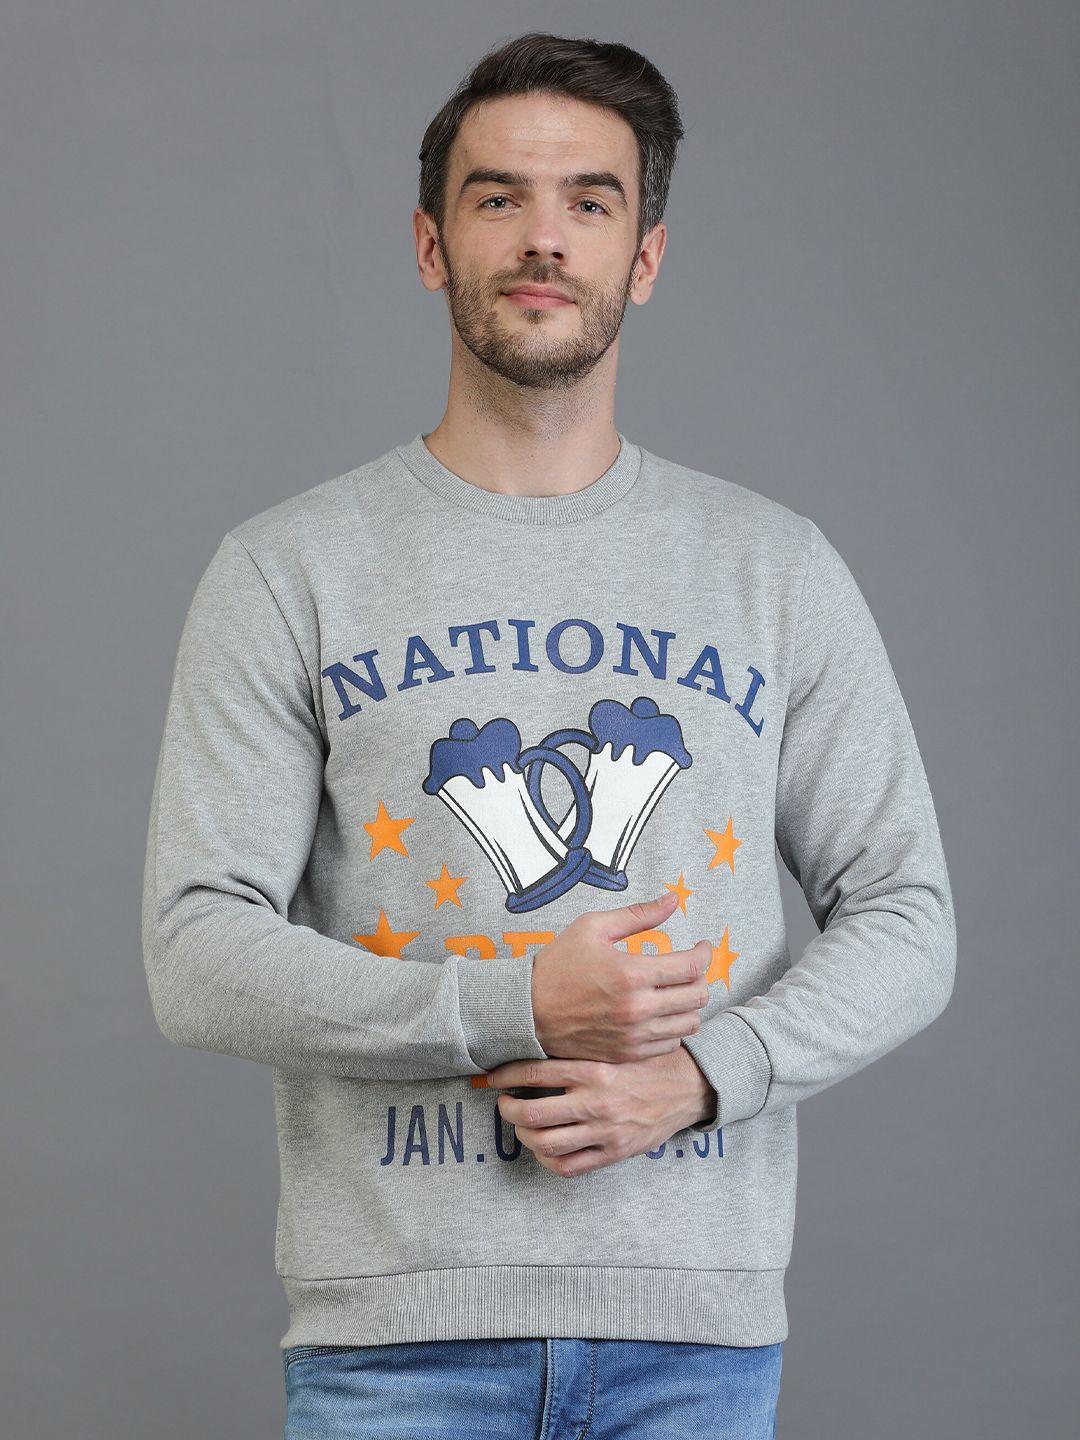 tqs typography printed fleece pullover sweatshirt